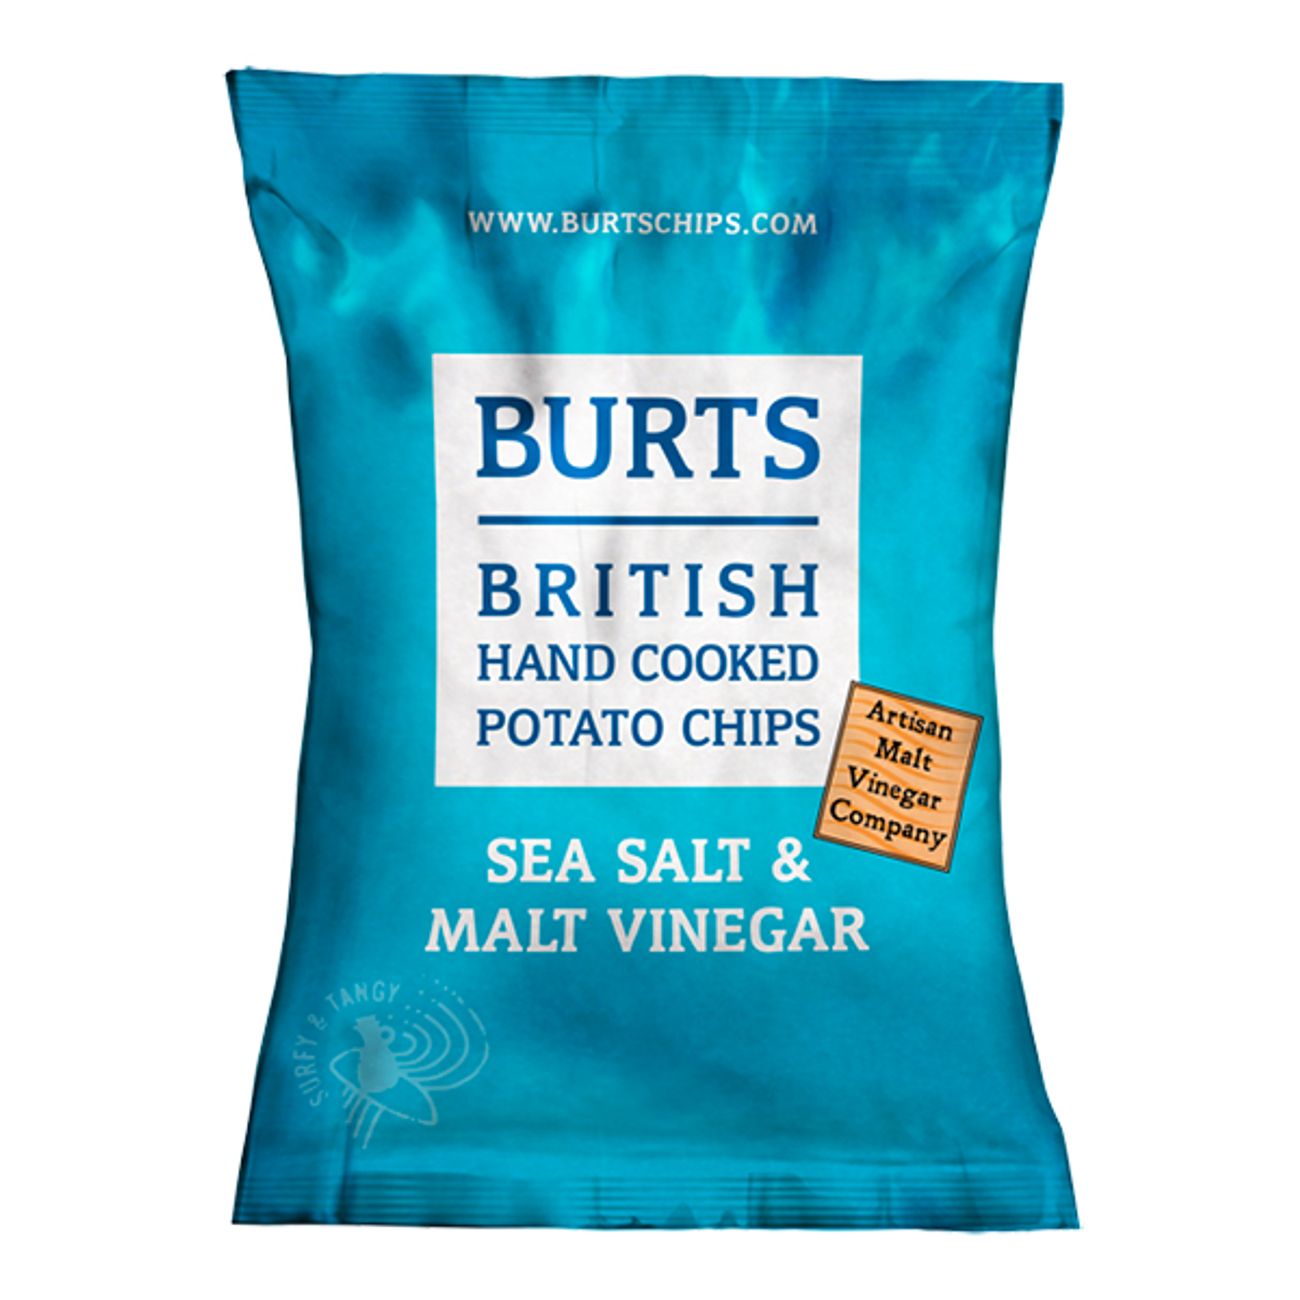 burts-potato-chips-salt-vinegar-1